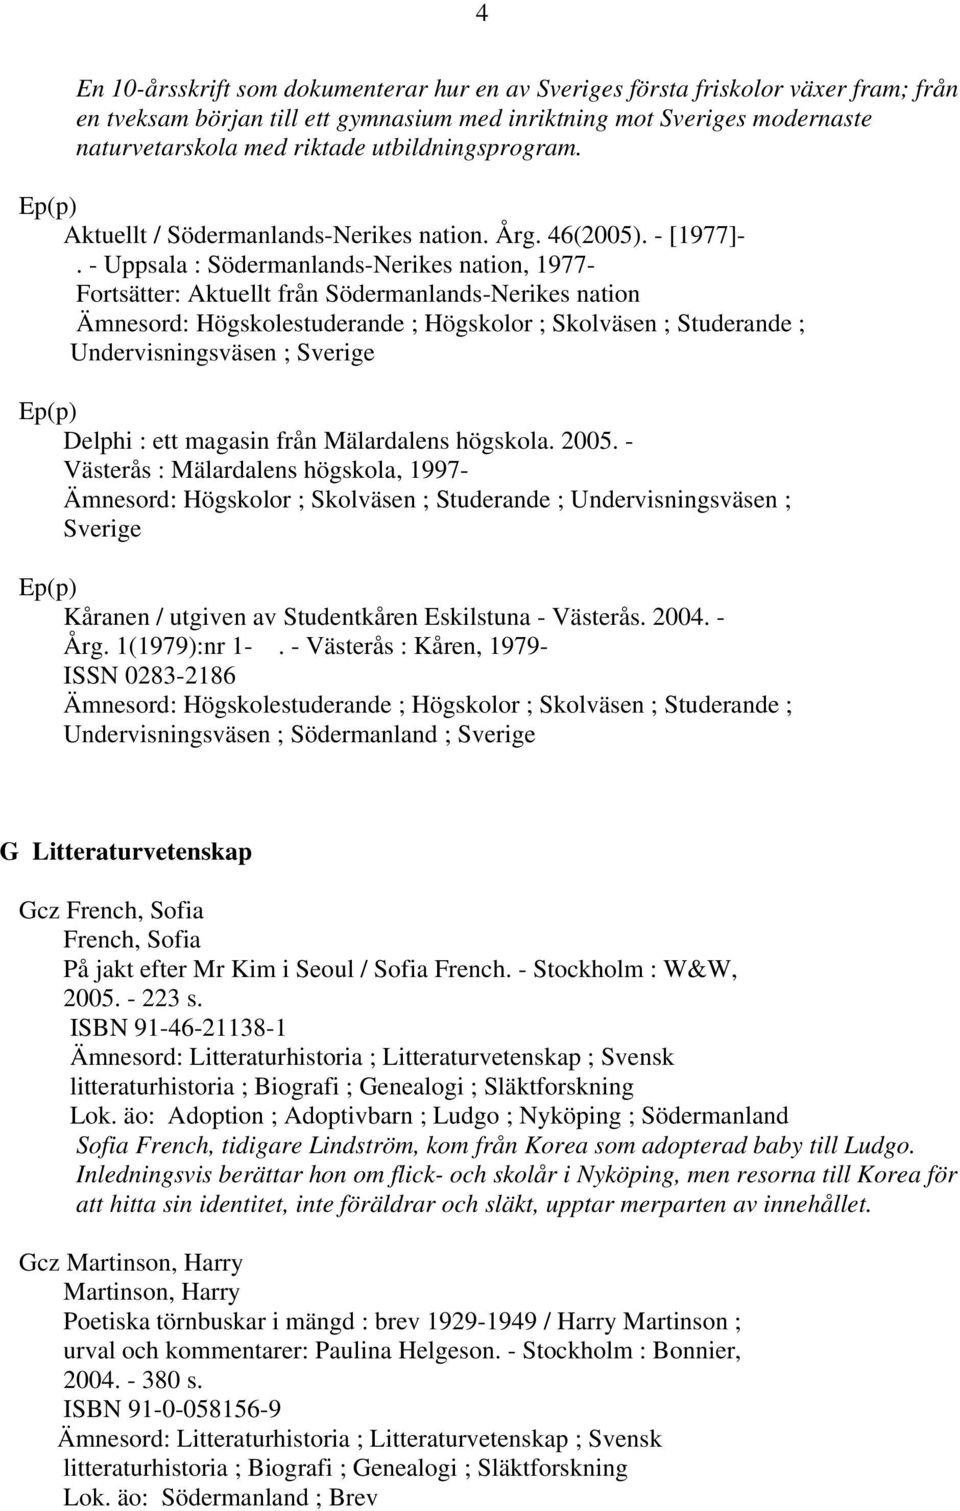 - Uppsala : Södermanlands-Nerikes nation, 1977- Fortsätter: Aktuellt från Södermanlands-Nerikes nation Ämnesord: Högskolestuderande ; Högskolor ; Skolväsen ; Studerande ; Undervisningsväsen ; Sverige